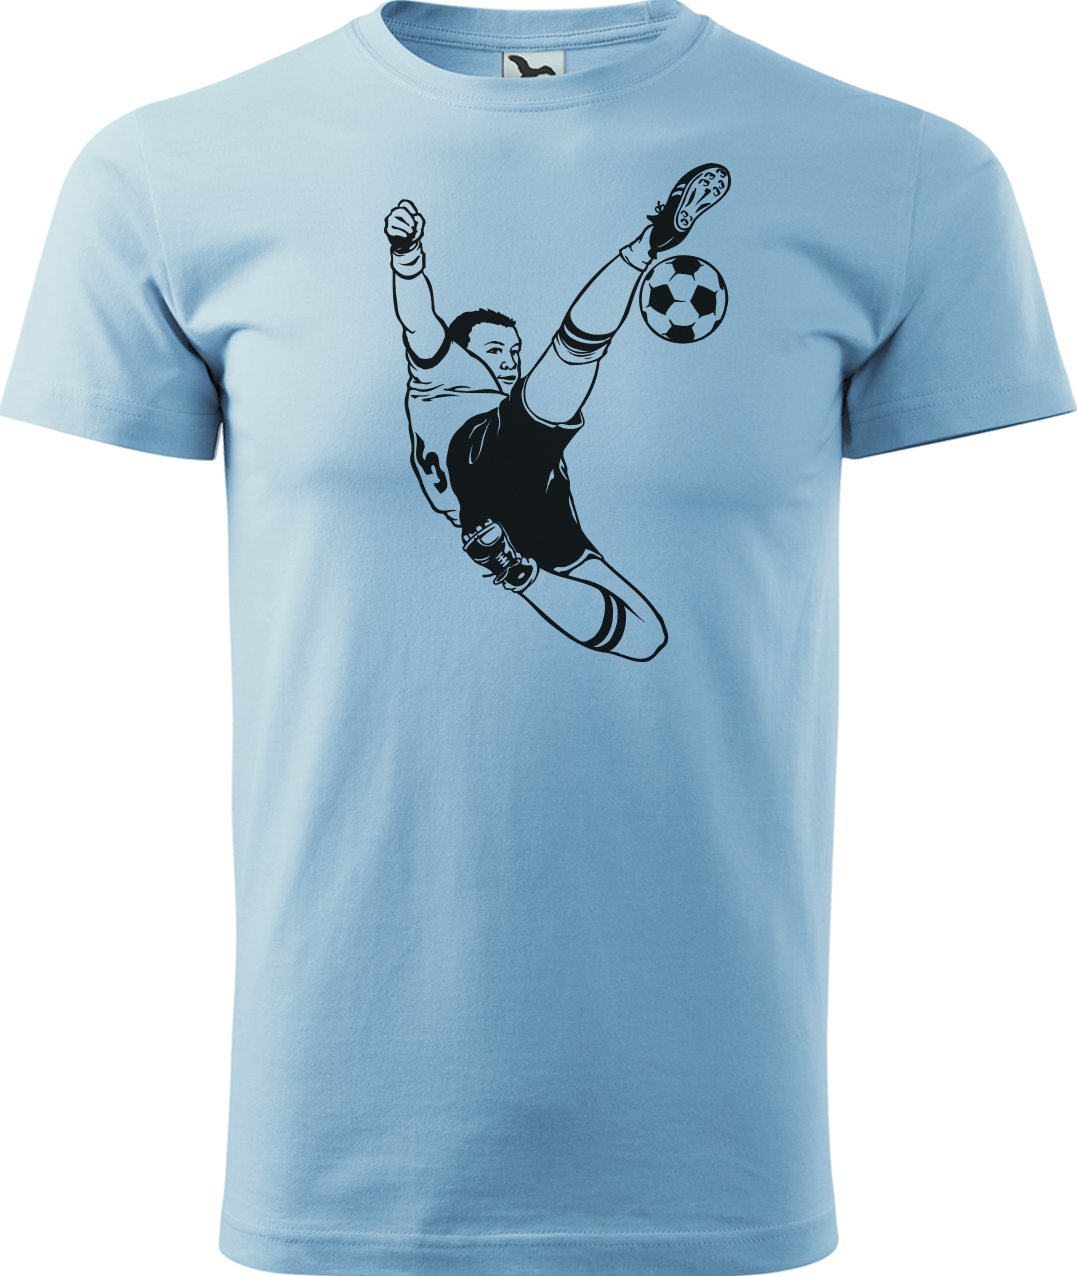 Tričko pro fotbalistu - Fotbalista s míčem Velikost: S, Barva: Nebesky modrá (15)